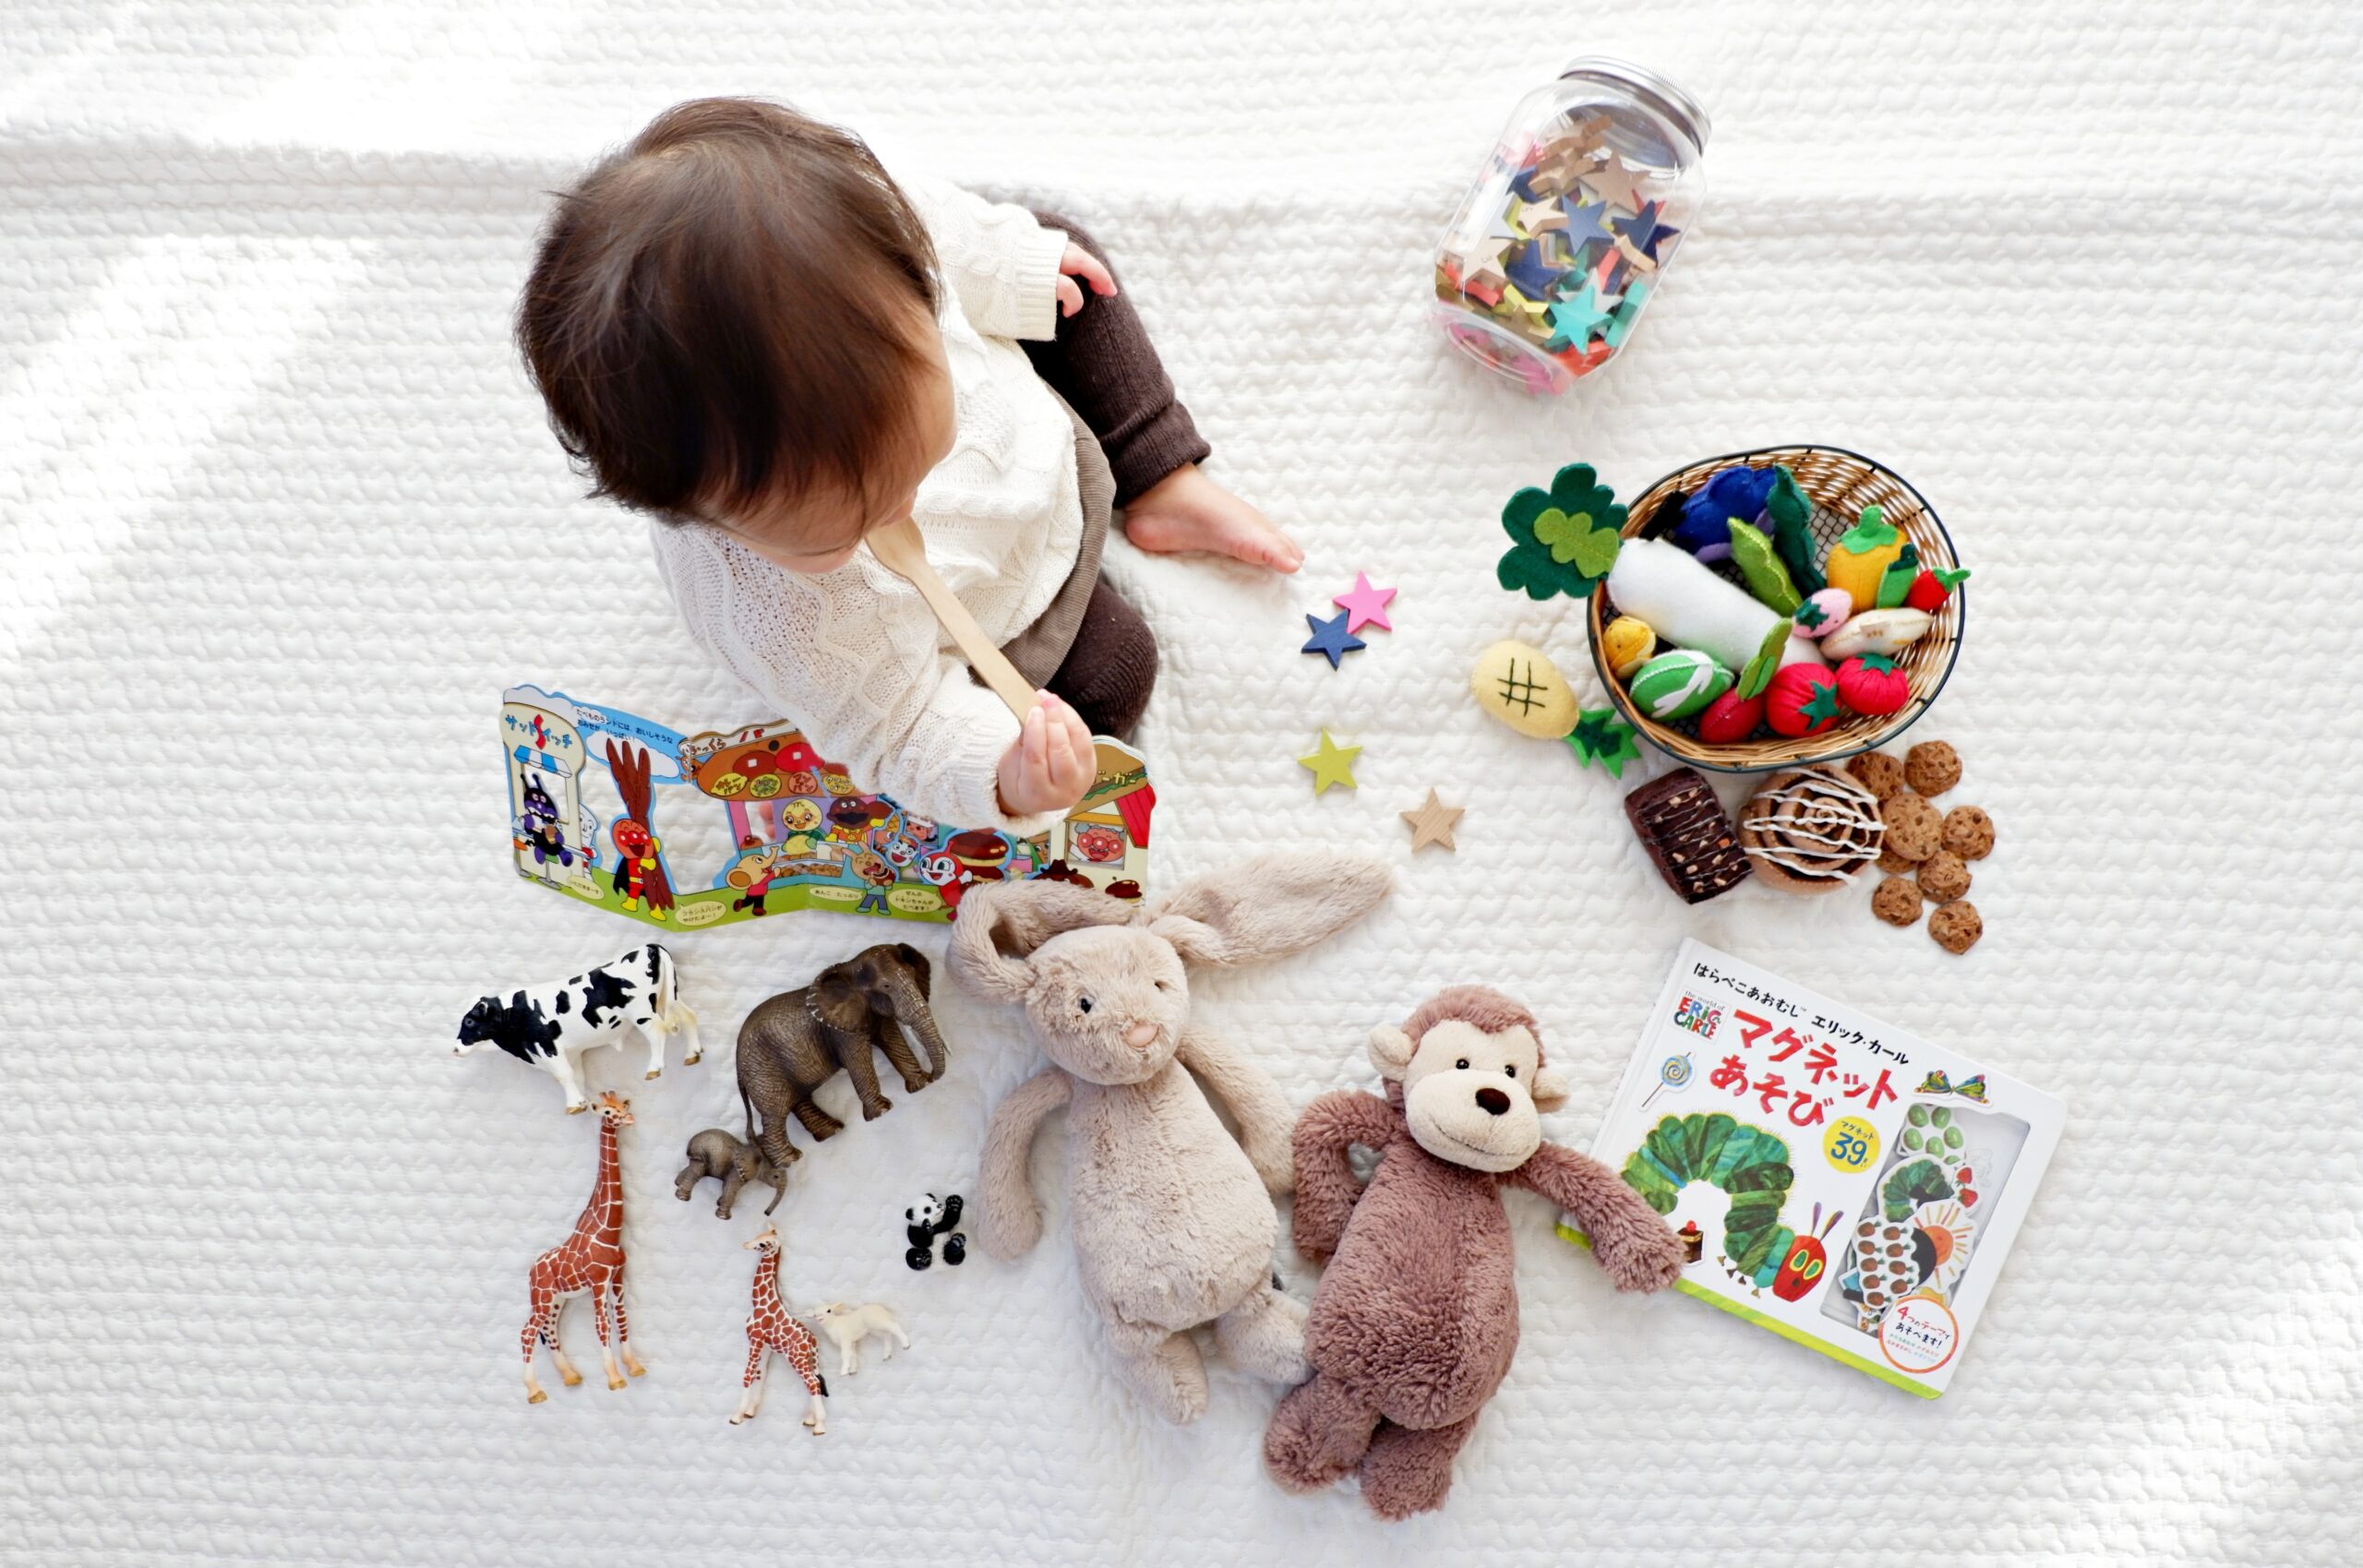 Dziecko bawi się zdalnie sterowanymi zabawkami